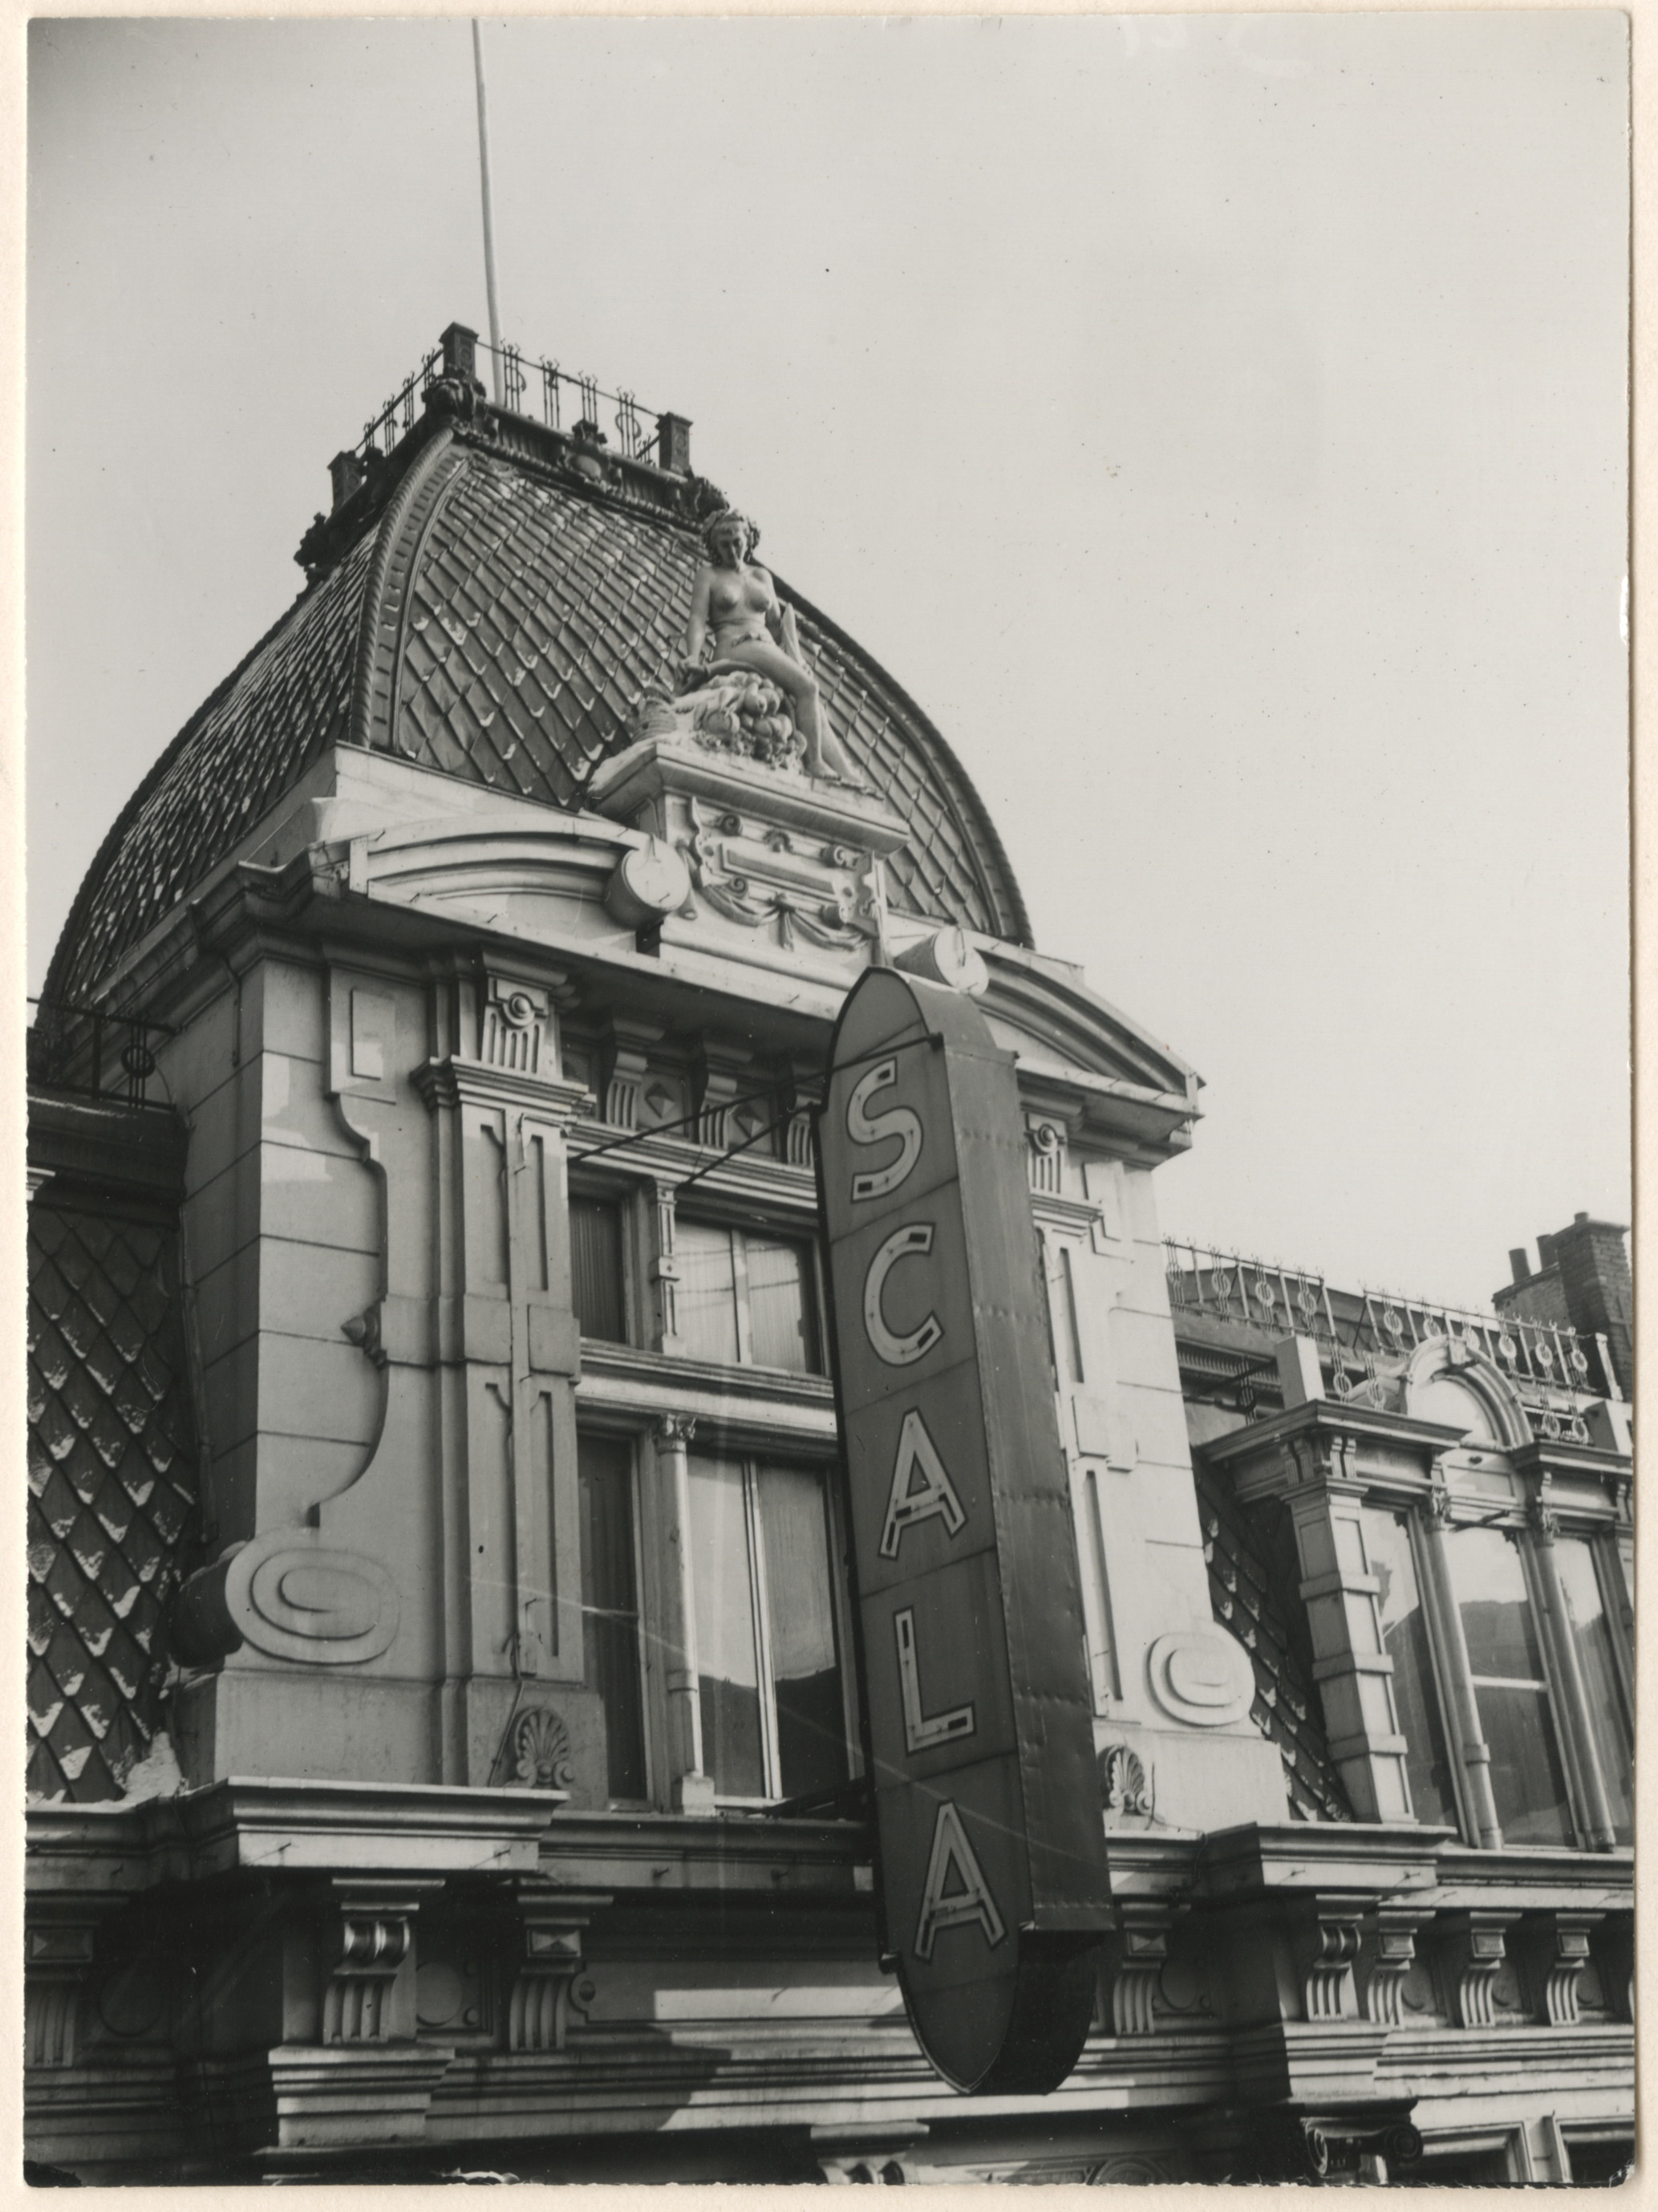 Scala theater, maker: W.F. van Oosten, 1955